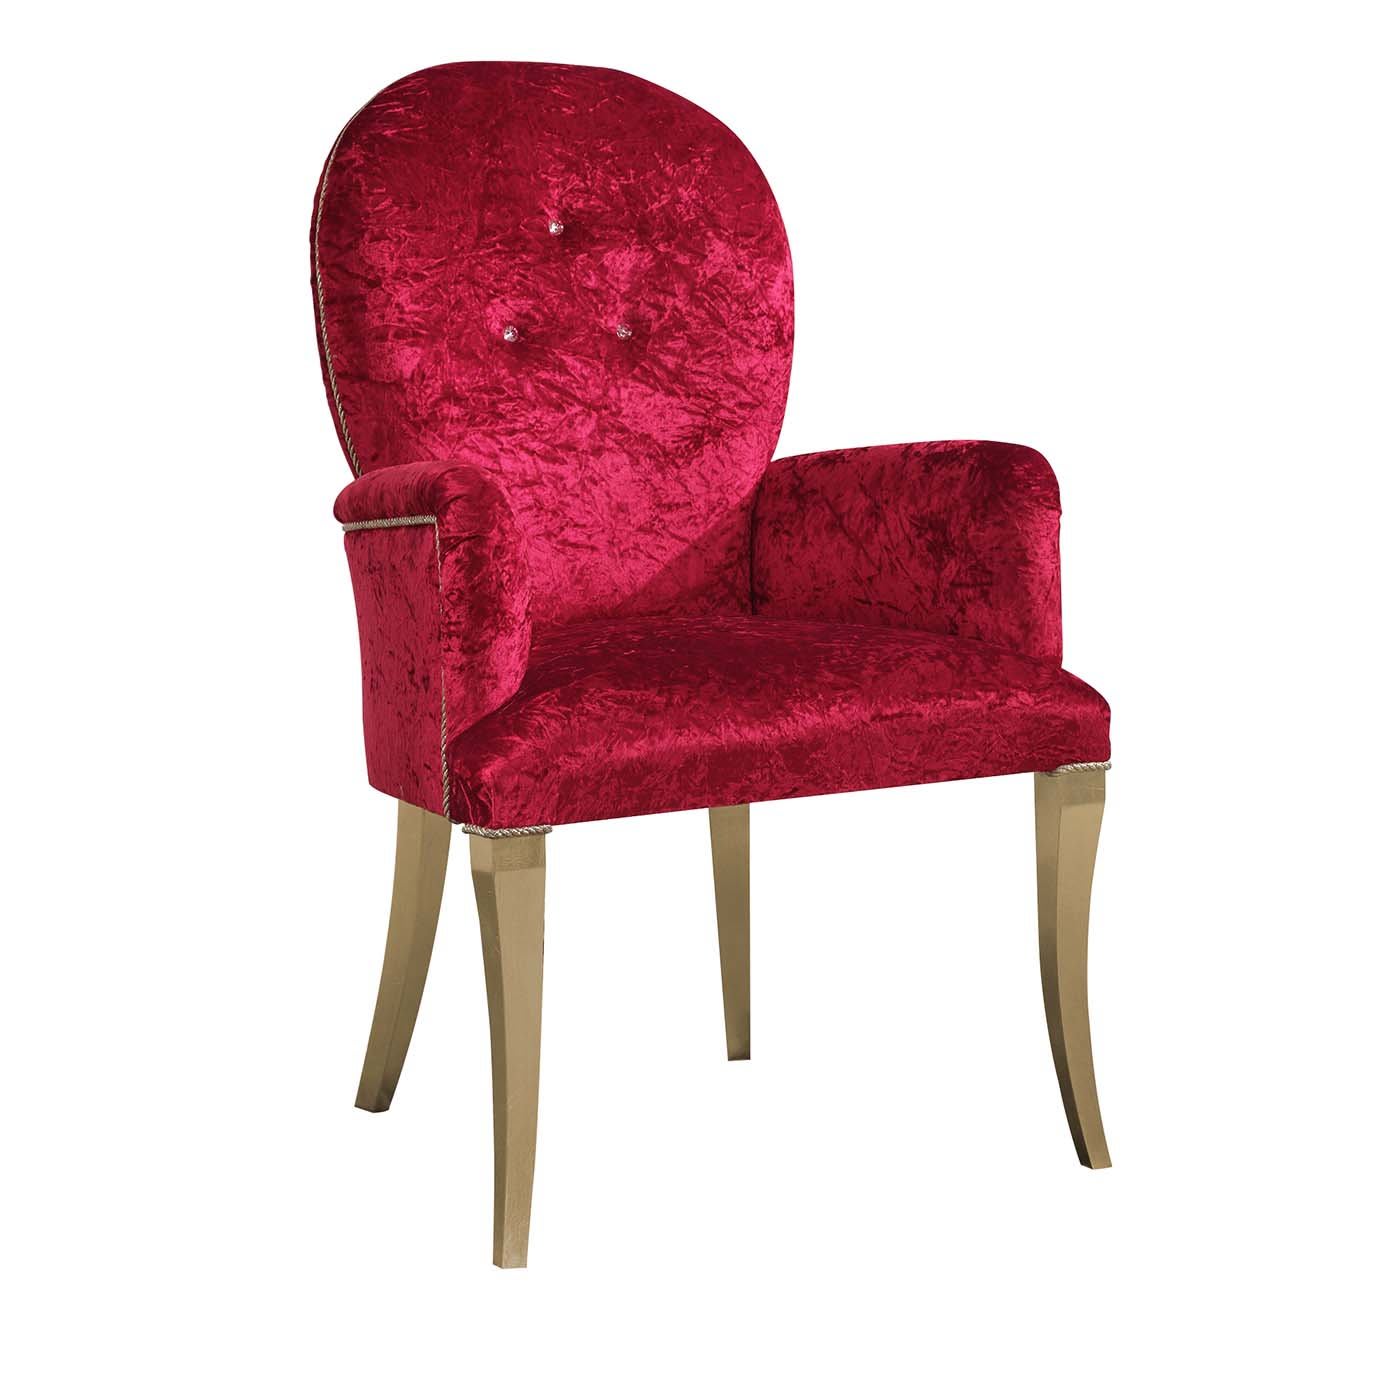 Tamara Gold Leaf and Swarovski Chair - Morello Gianpaolo